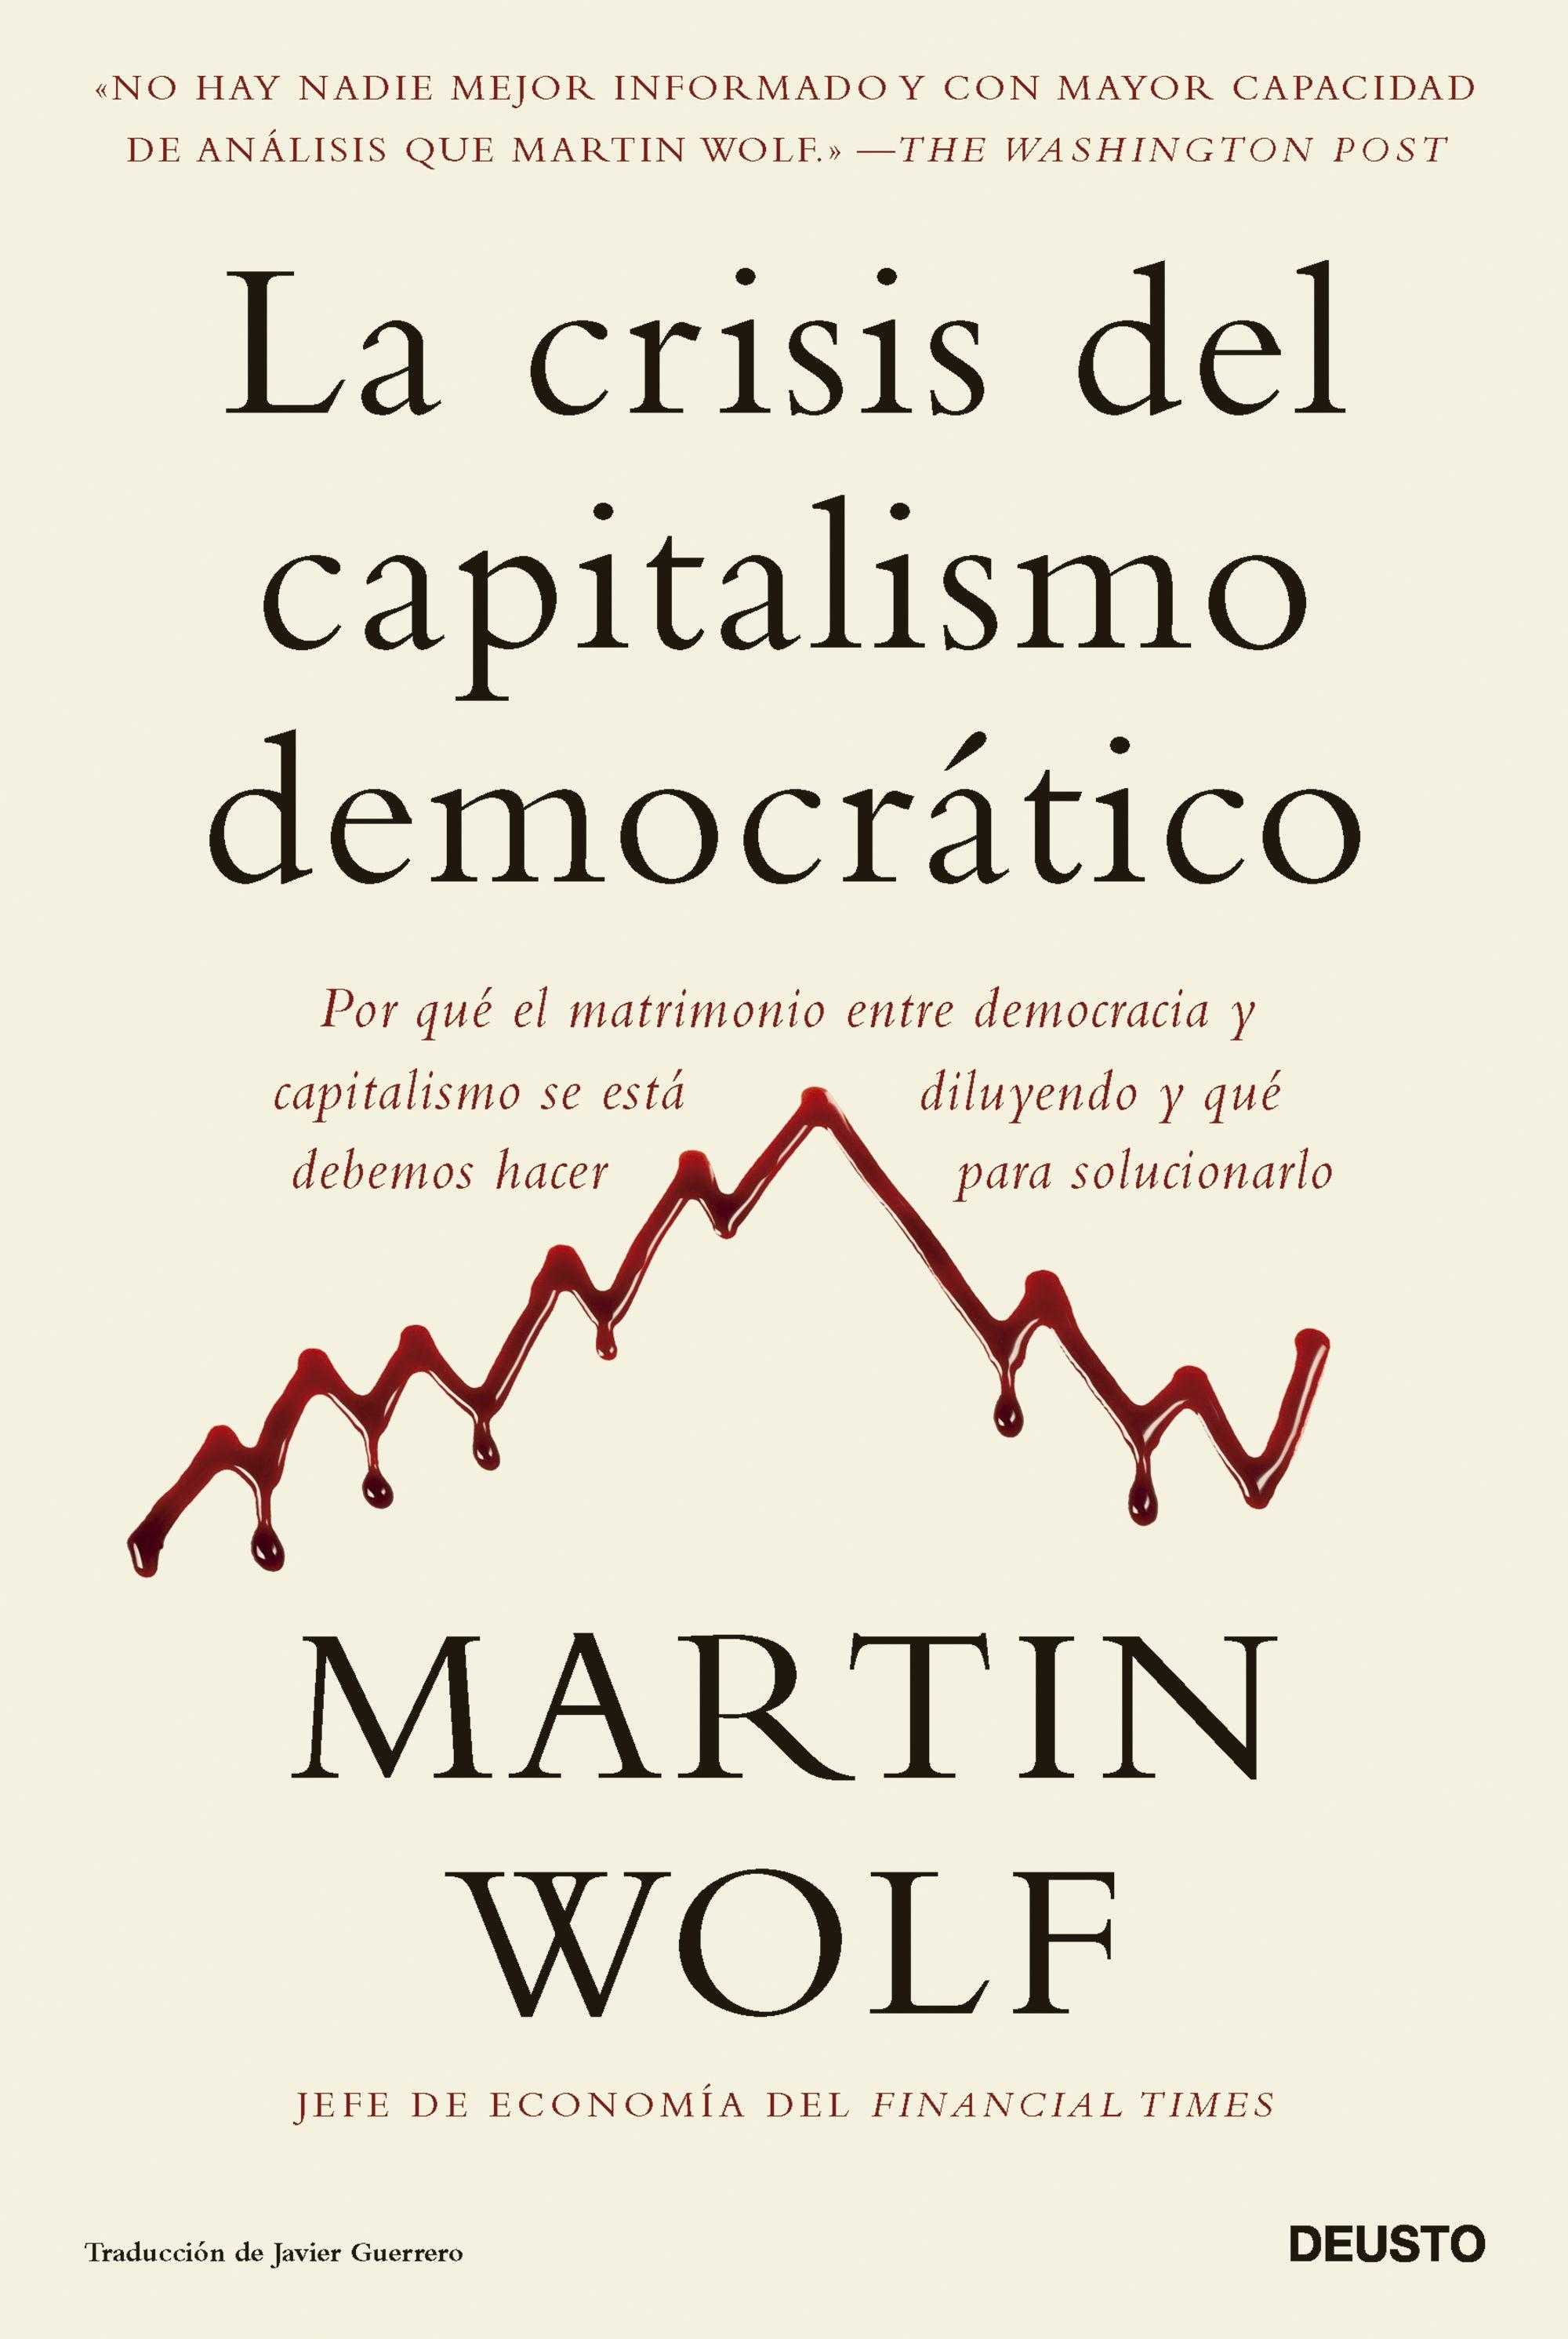 La Crisis del Capitalismo Democrático "Por que el Matrimonio Entre Democracia y Capitalismo se Está Diluyendo Y"